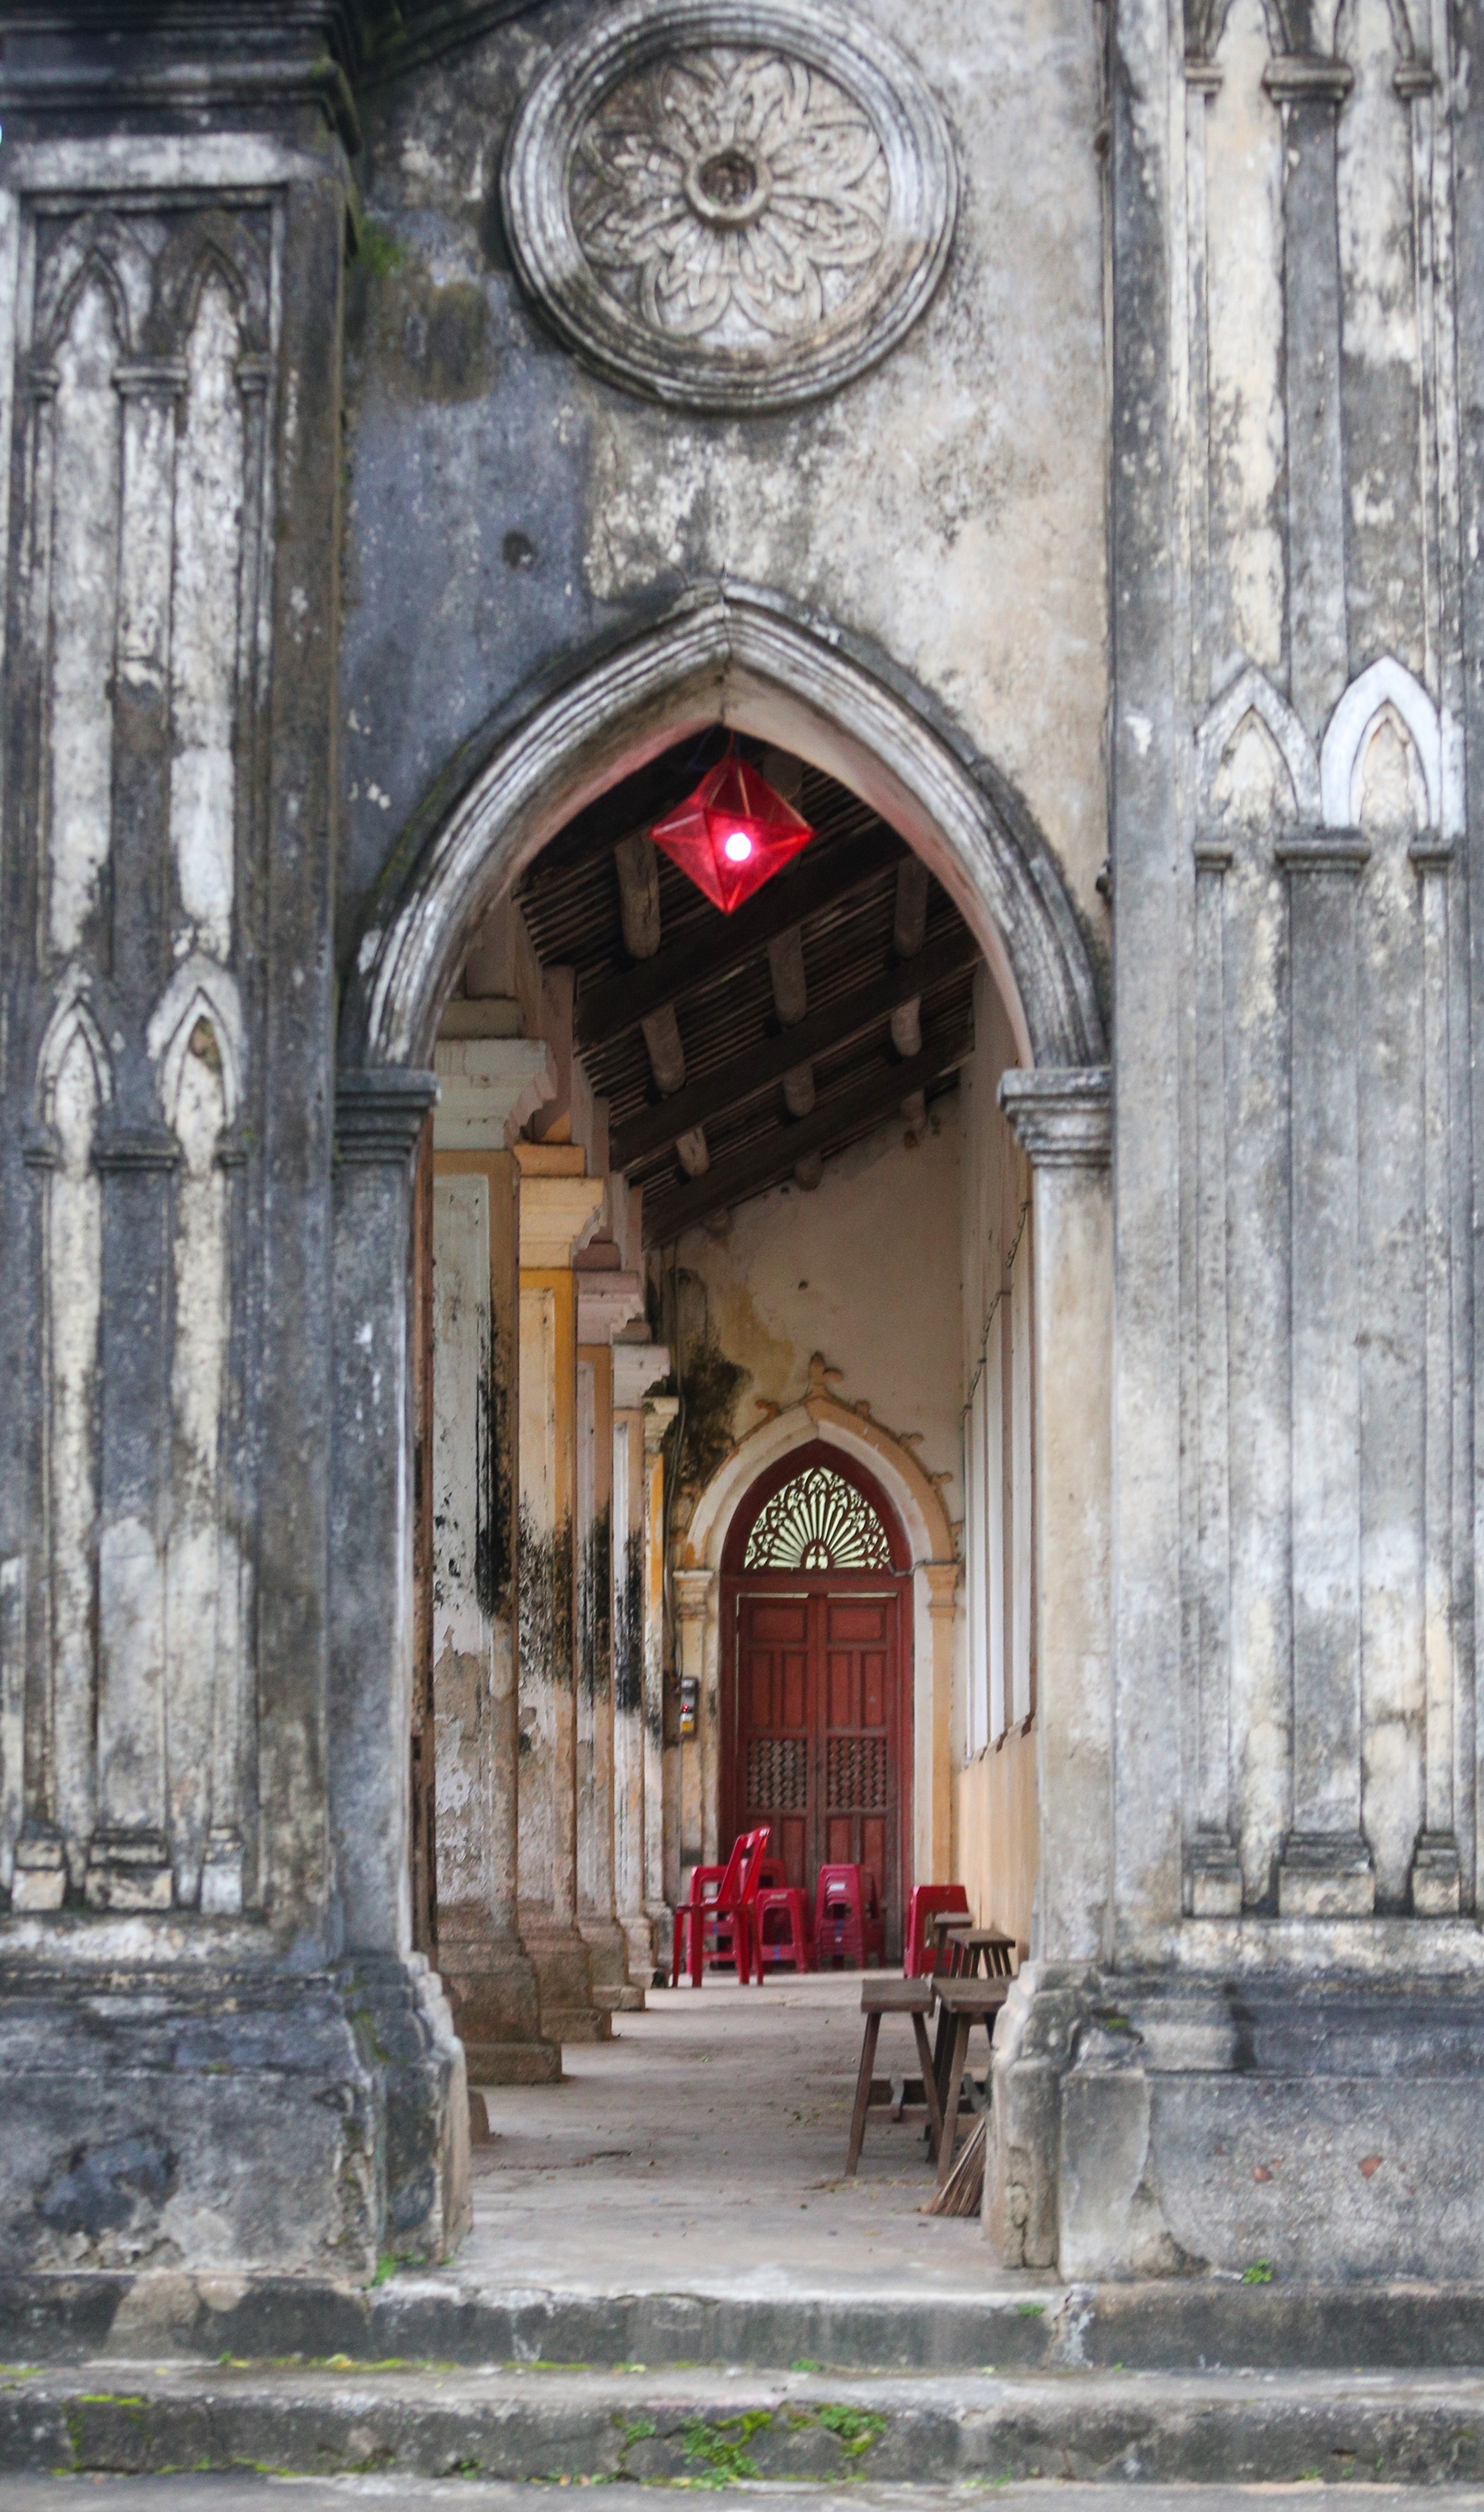 Vẻ đẹp huyền bí của nhà thờ cổ bằng đá 120 tuổi ở Đà Nẵng - Ảnh 5.